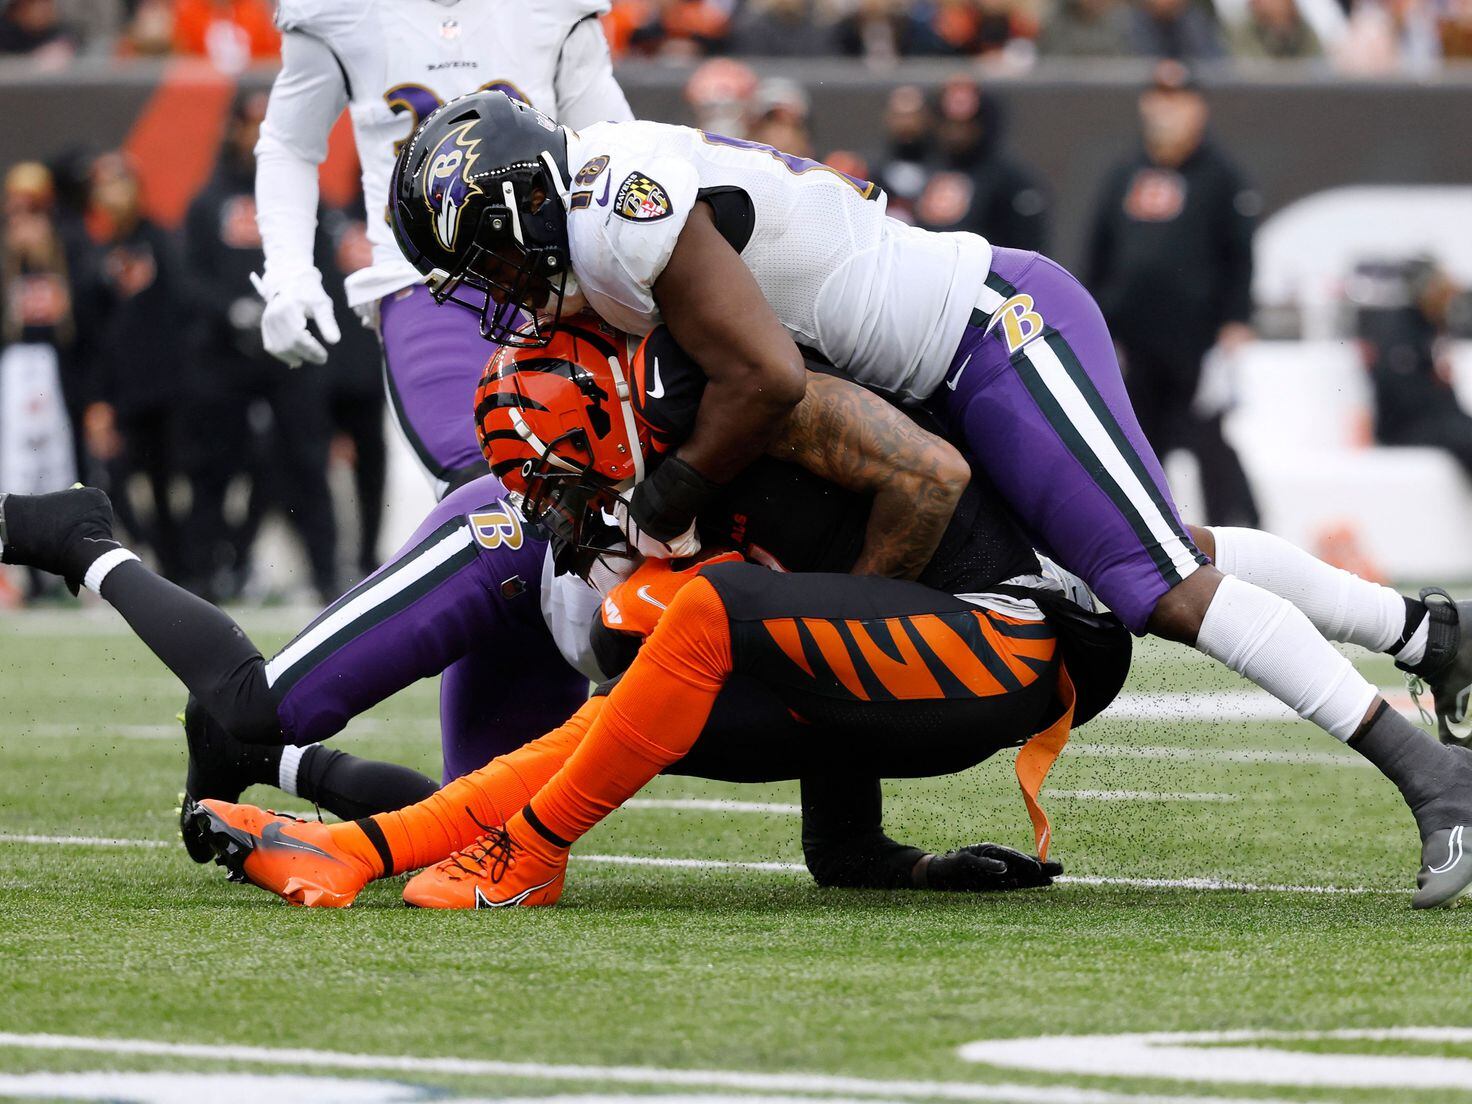 Cincinnati Bengals vs. Baltimore Ravens: How to watch NFL Wild